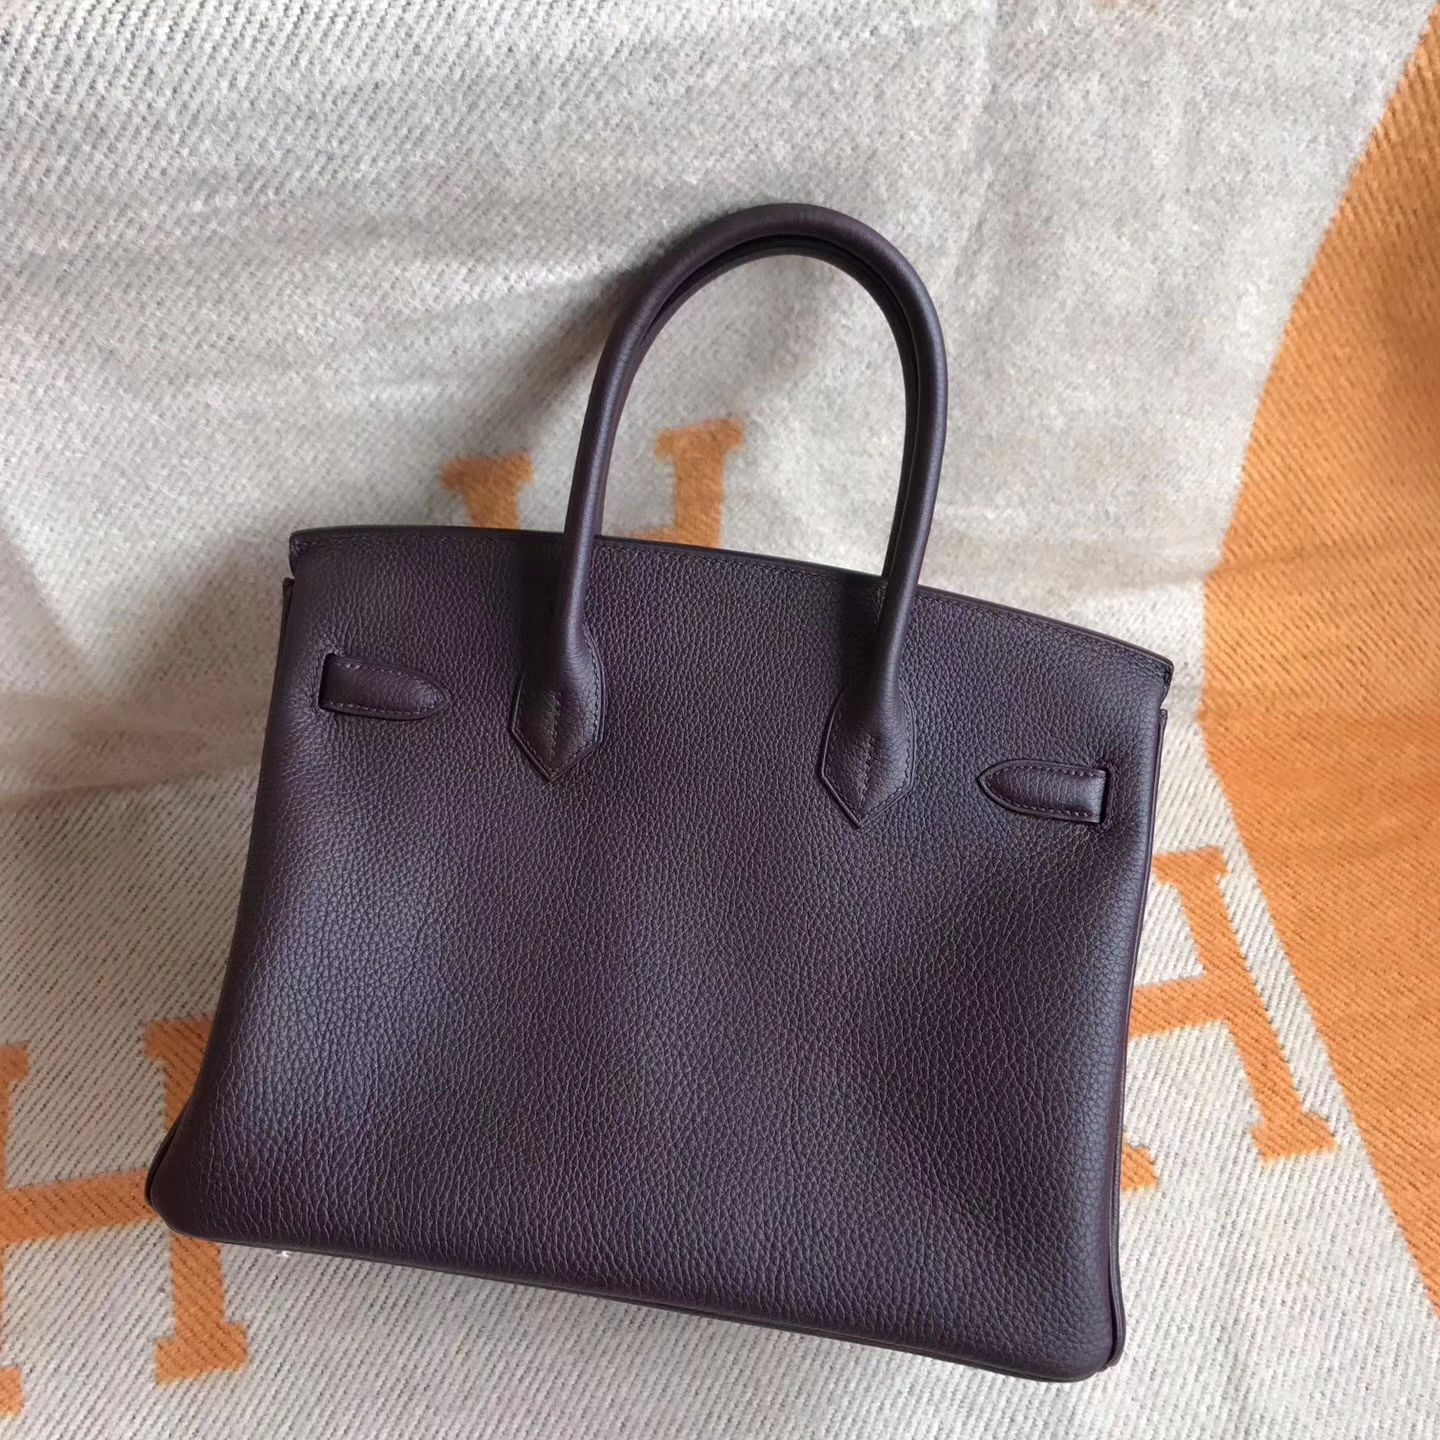 Luxury Hermes CK57 Bordeaux Togo Calfskin Birkin30cm Handbag Silver Hardware